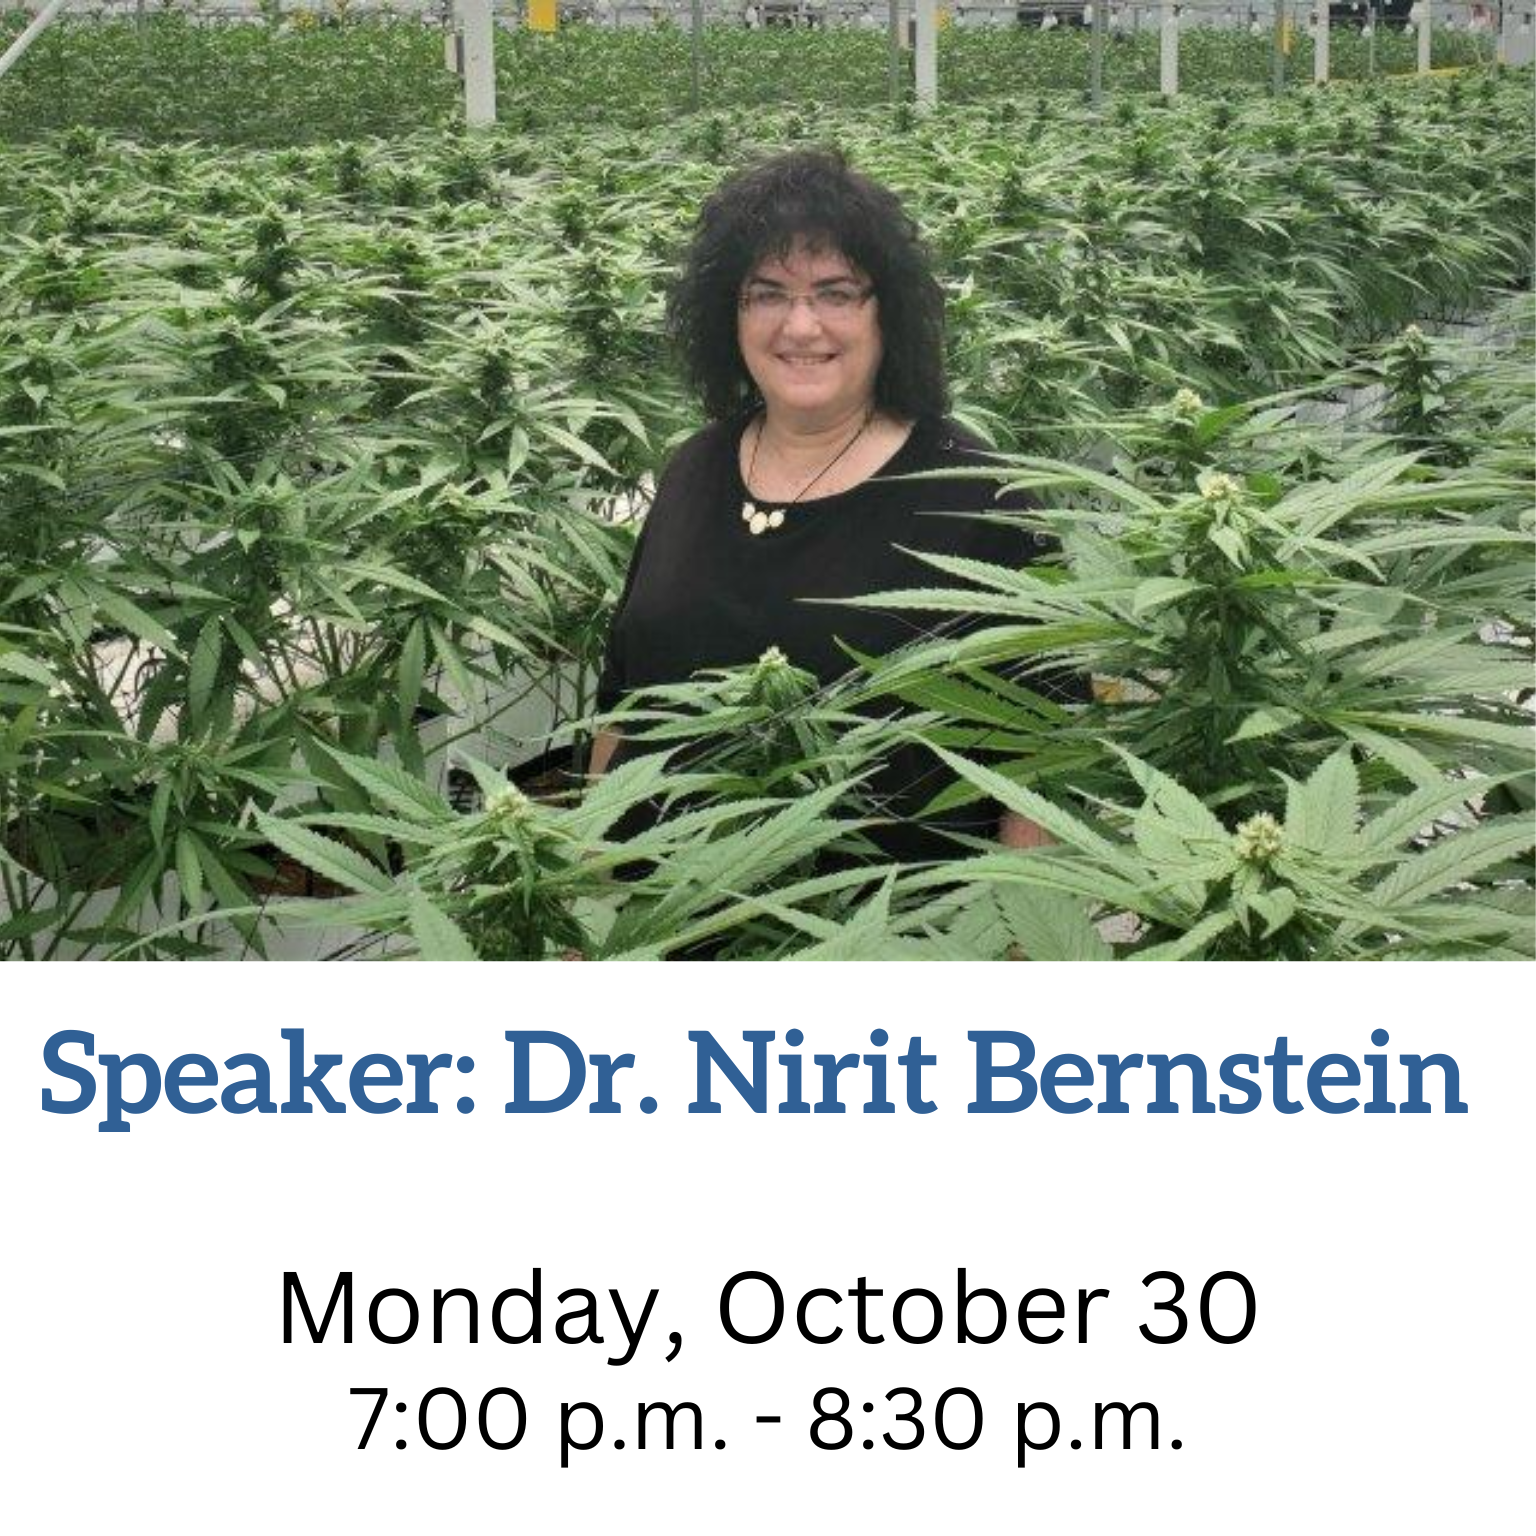 Speaker: Dr. Nirit Bernstein